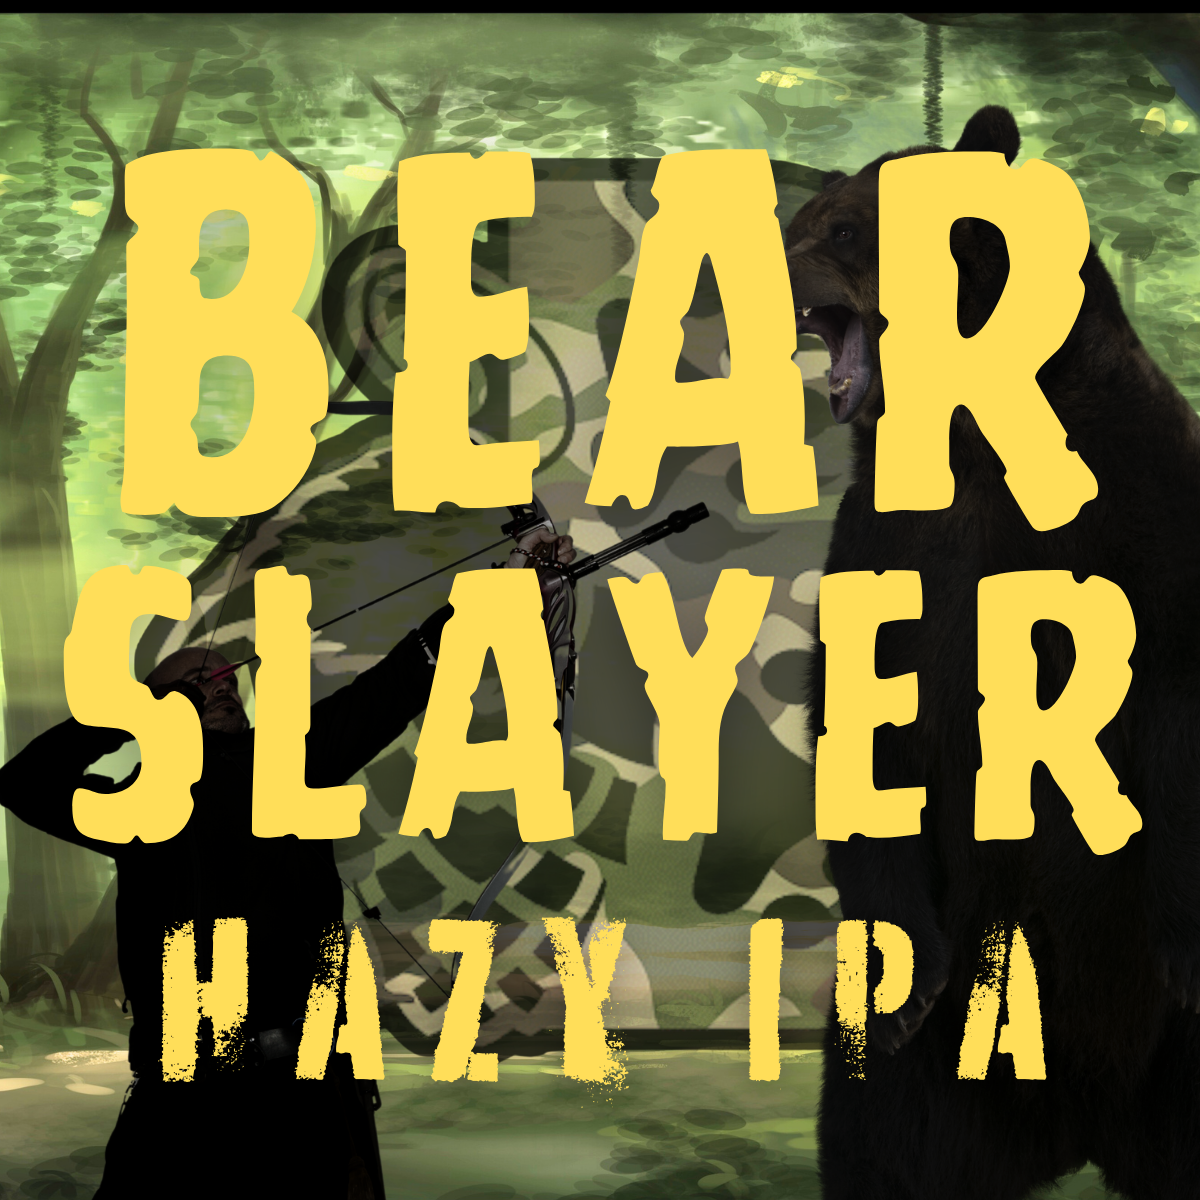 Bear Slayer Button Up Brewers Shirt